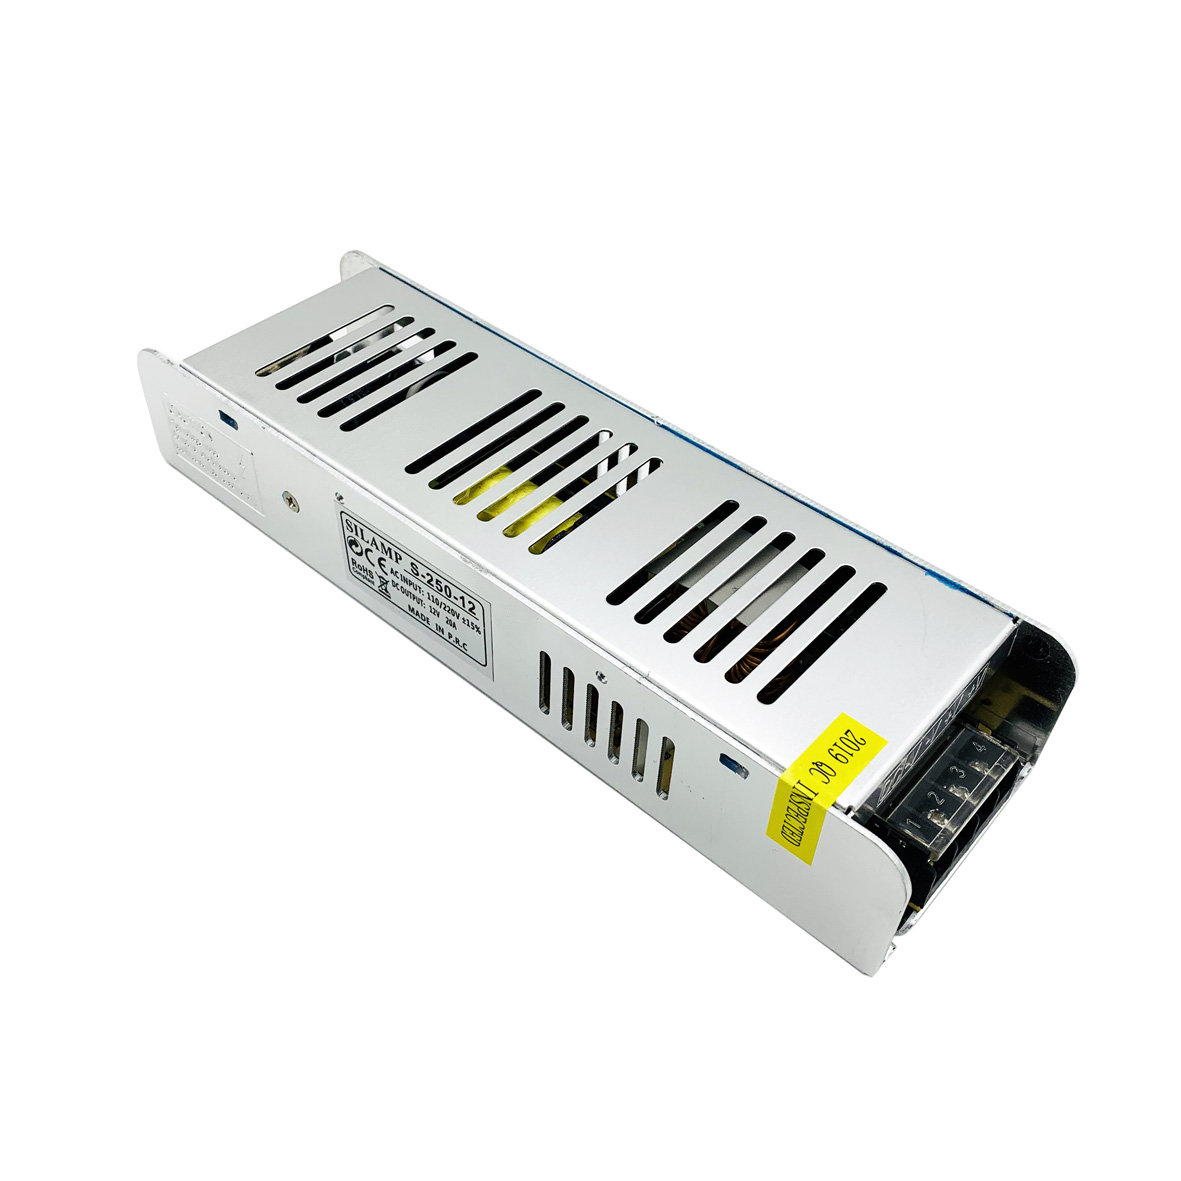 DGAPT25024 - 24V - elettronicadefilippo srl - Alimentatore Per Strisce LED  - LED Driver 24V 250W